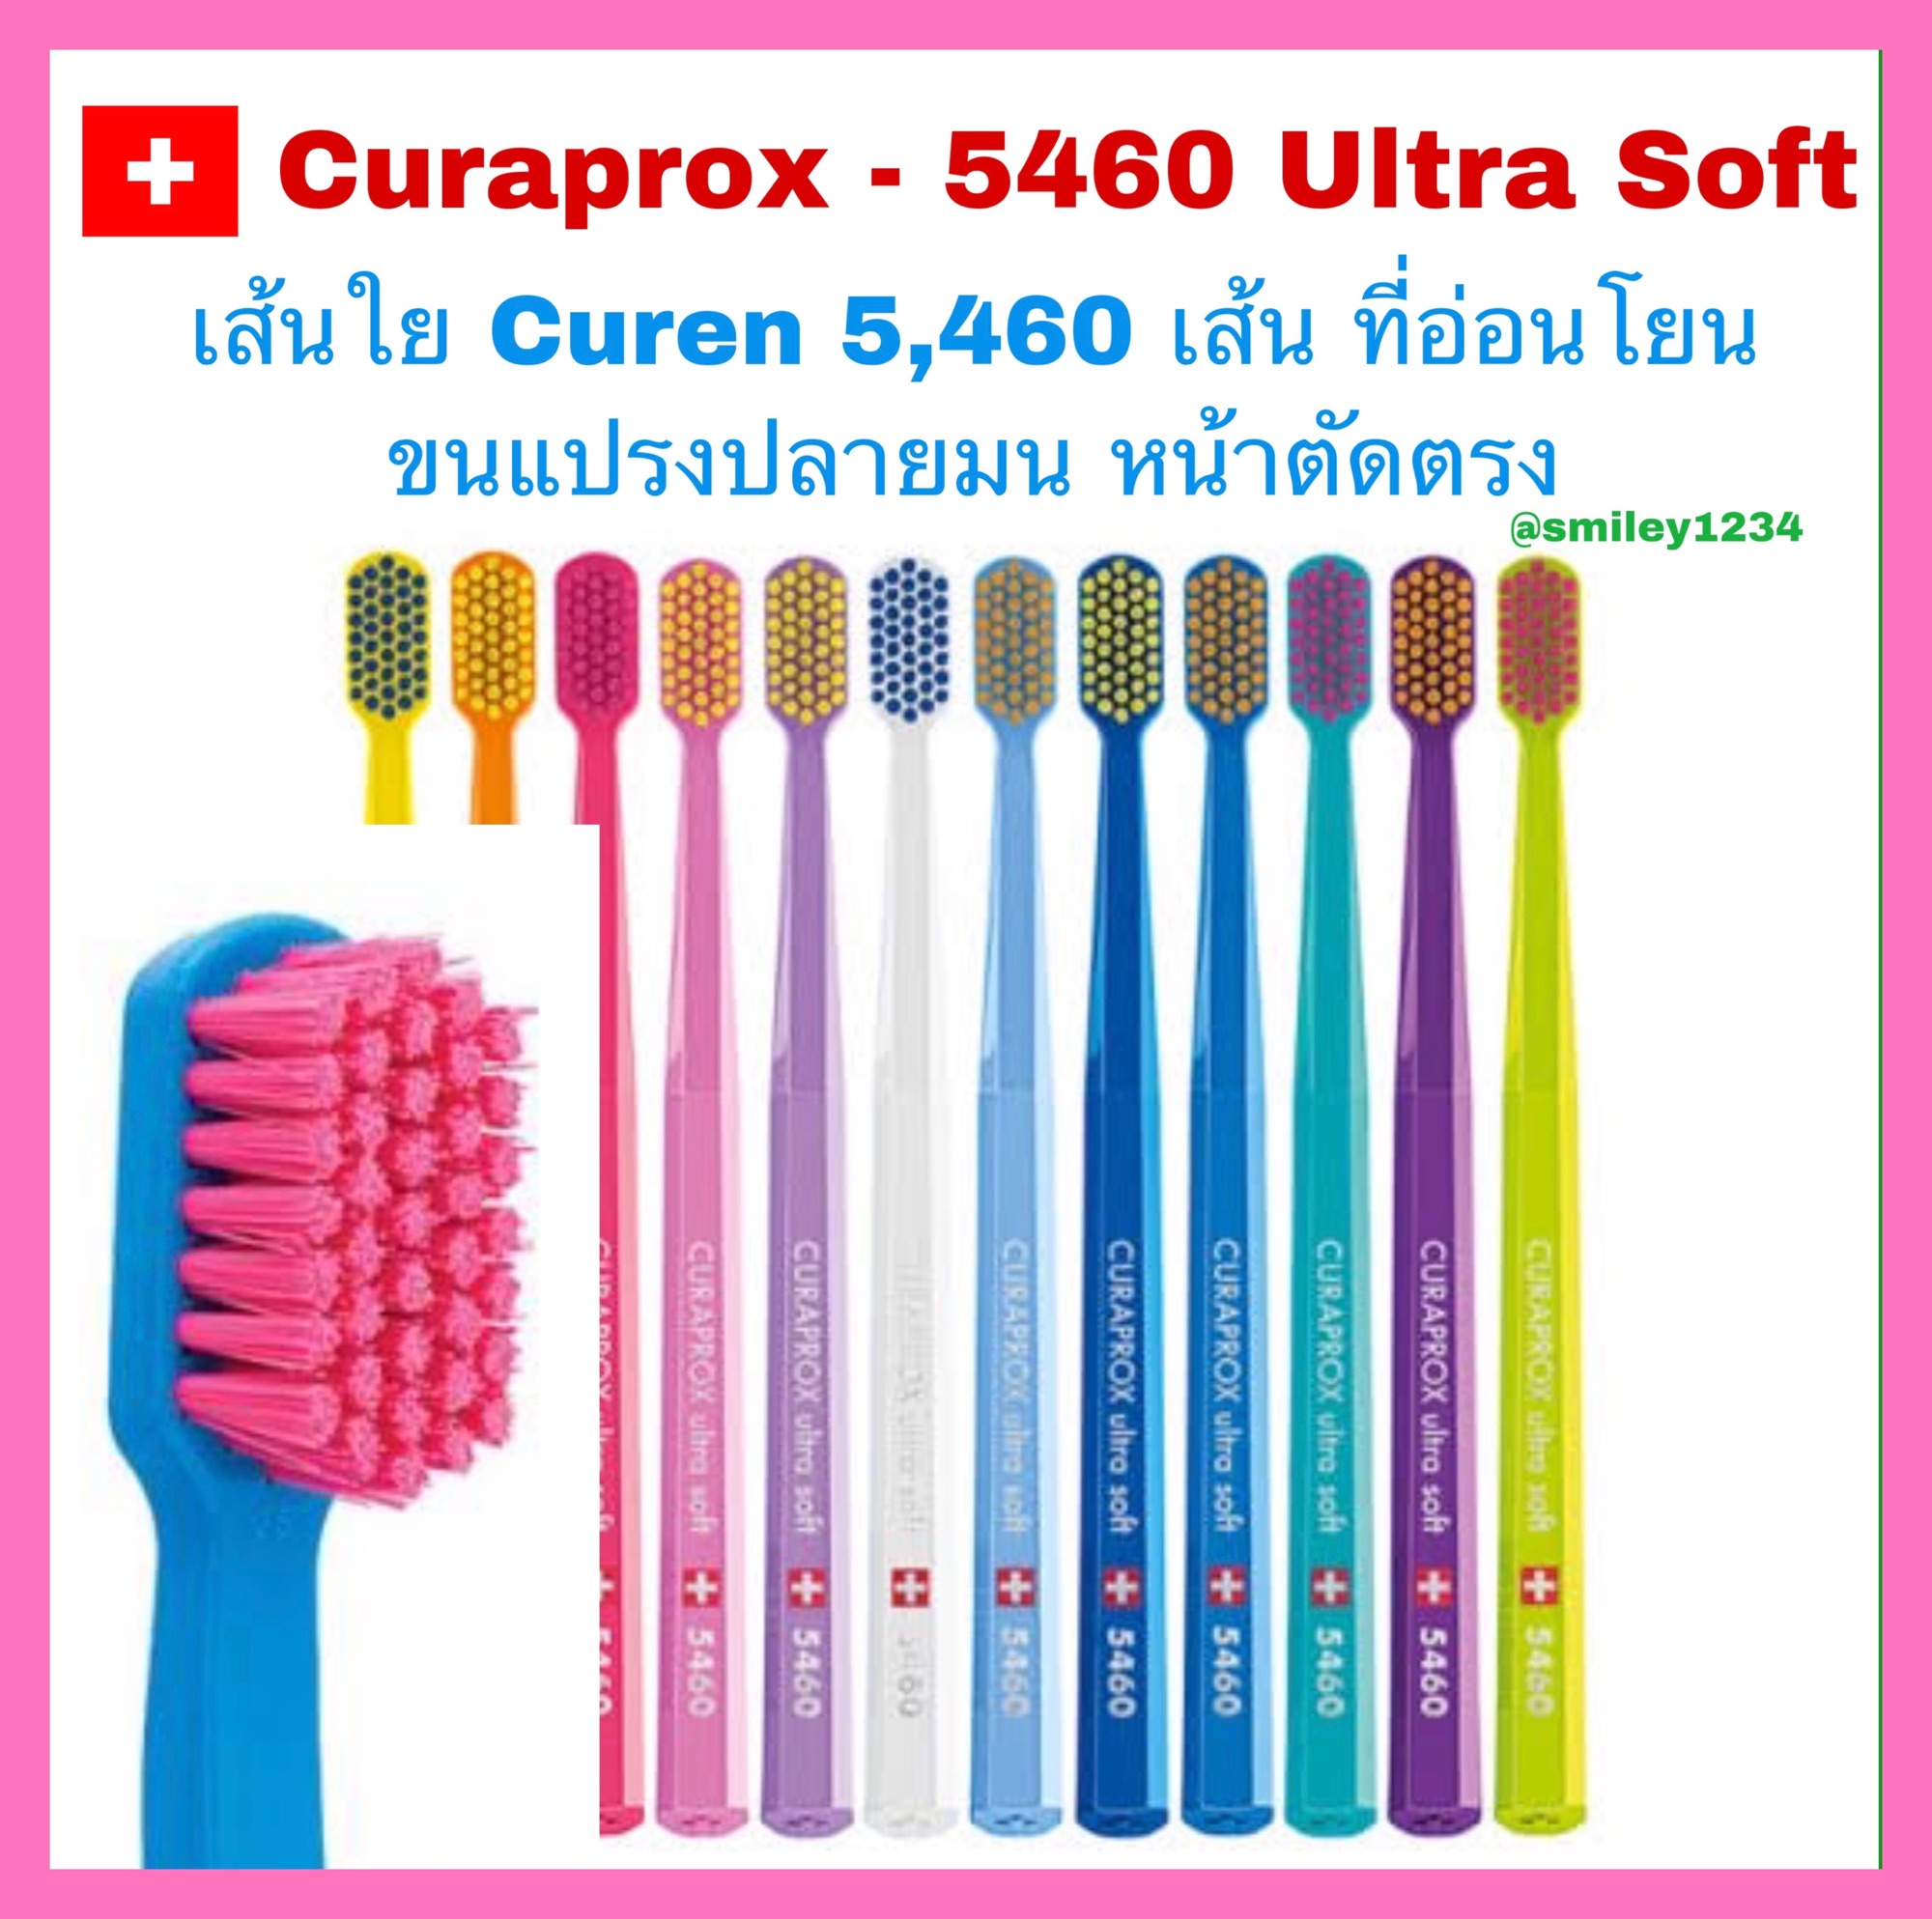 แปรงสีฟัน Curaprox - 5460 Ultra Soft เส้นใย Curen 5,460 เส้น 1 ด้าม